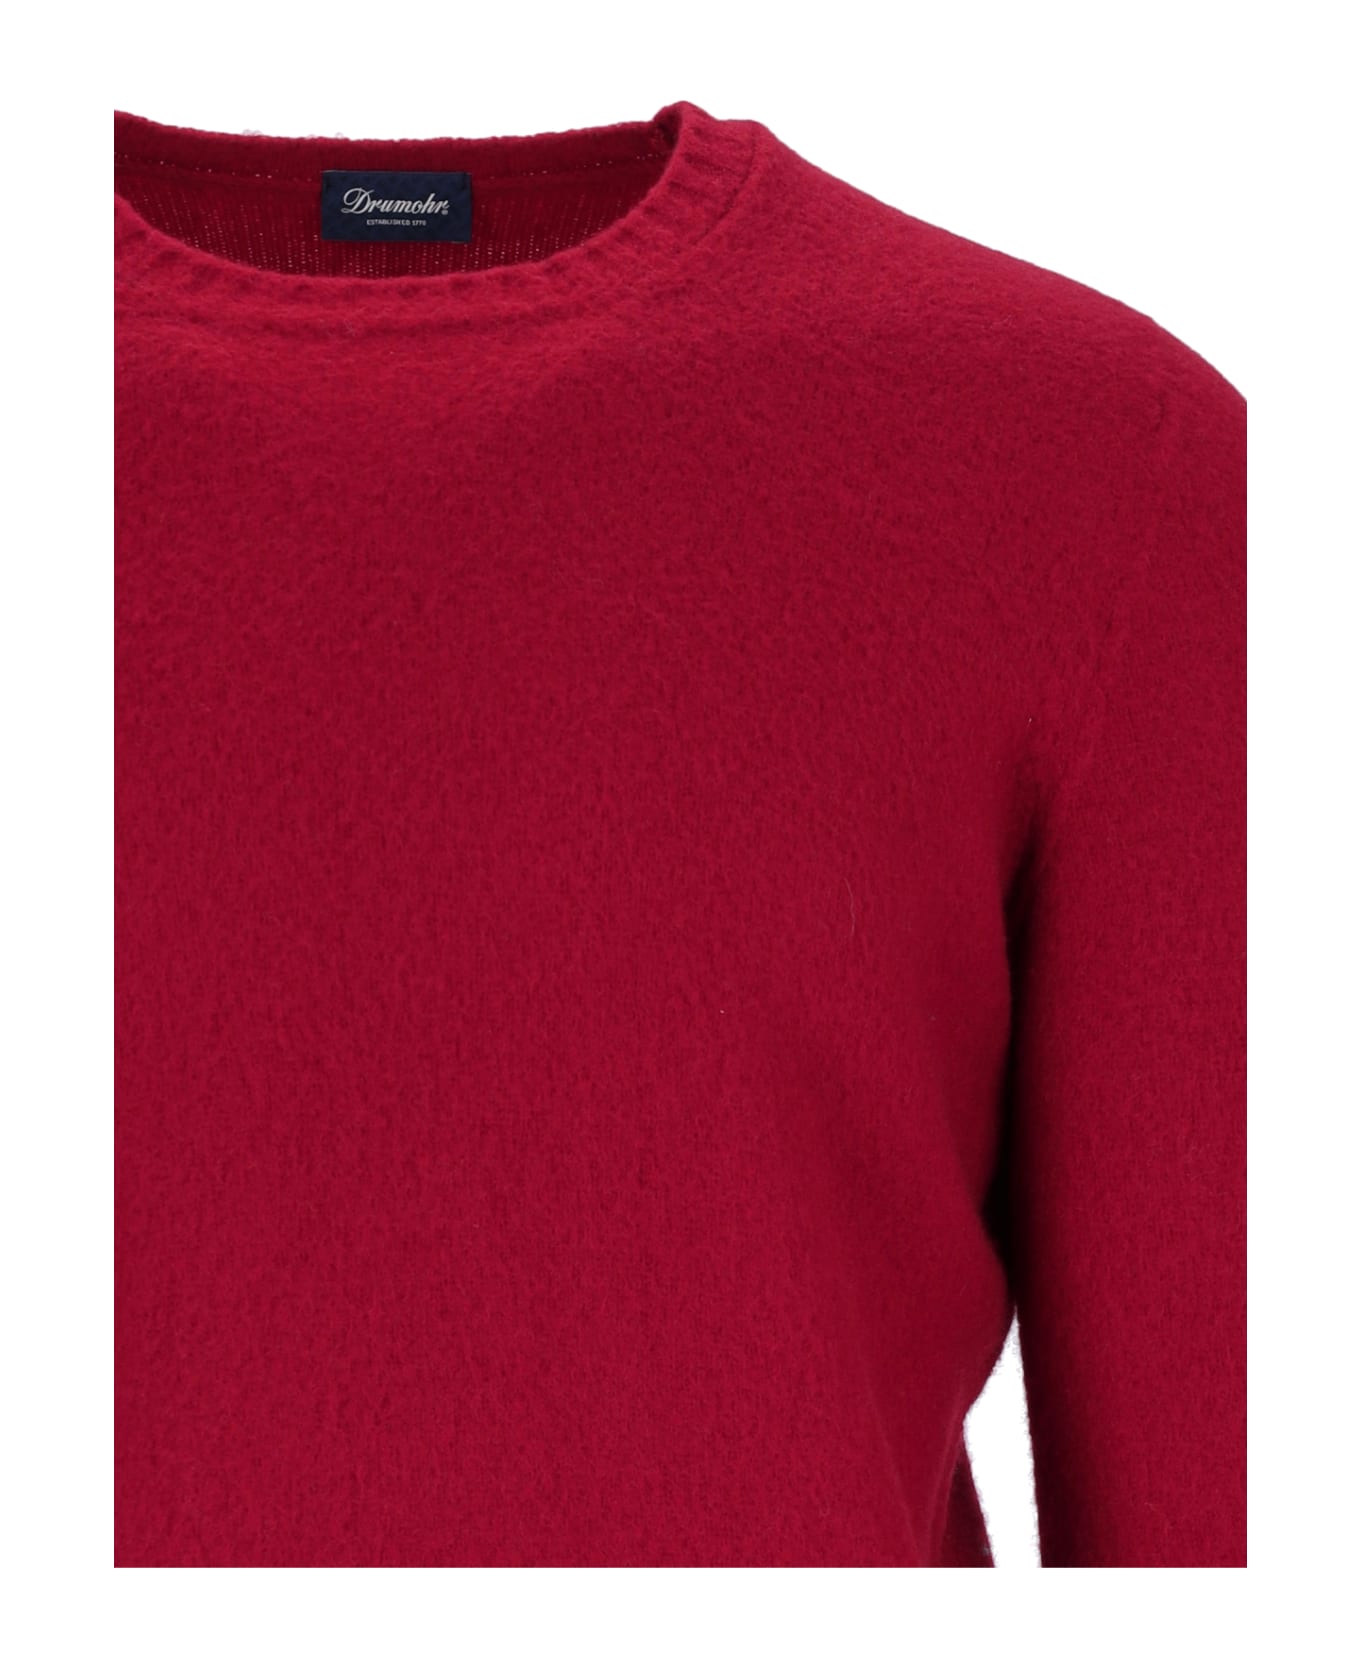 Drumohr Classic Sweater - Red